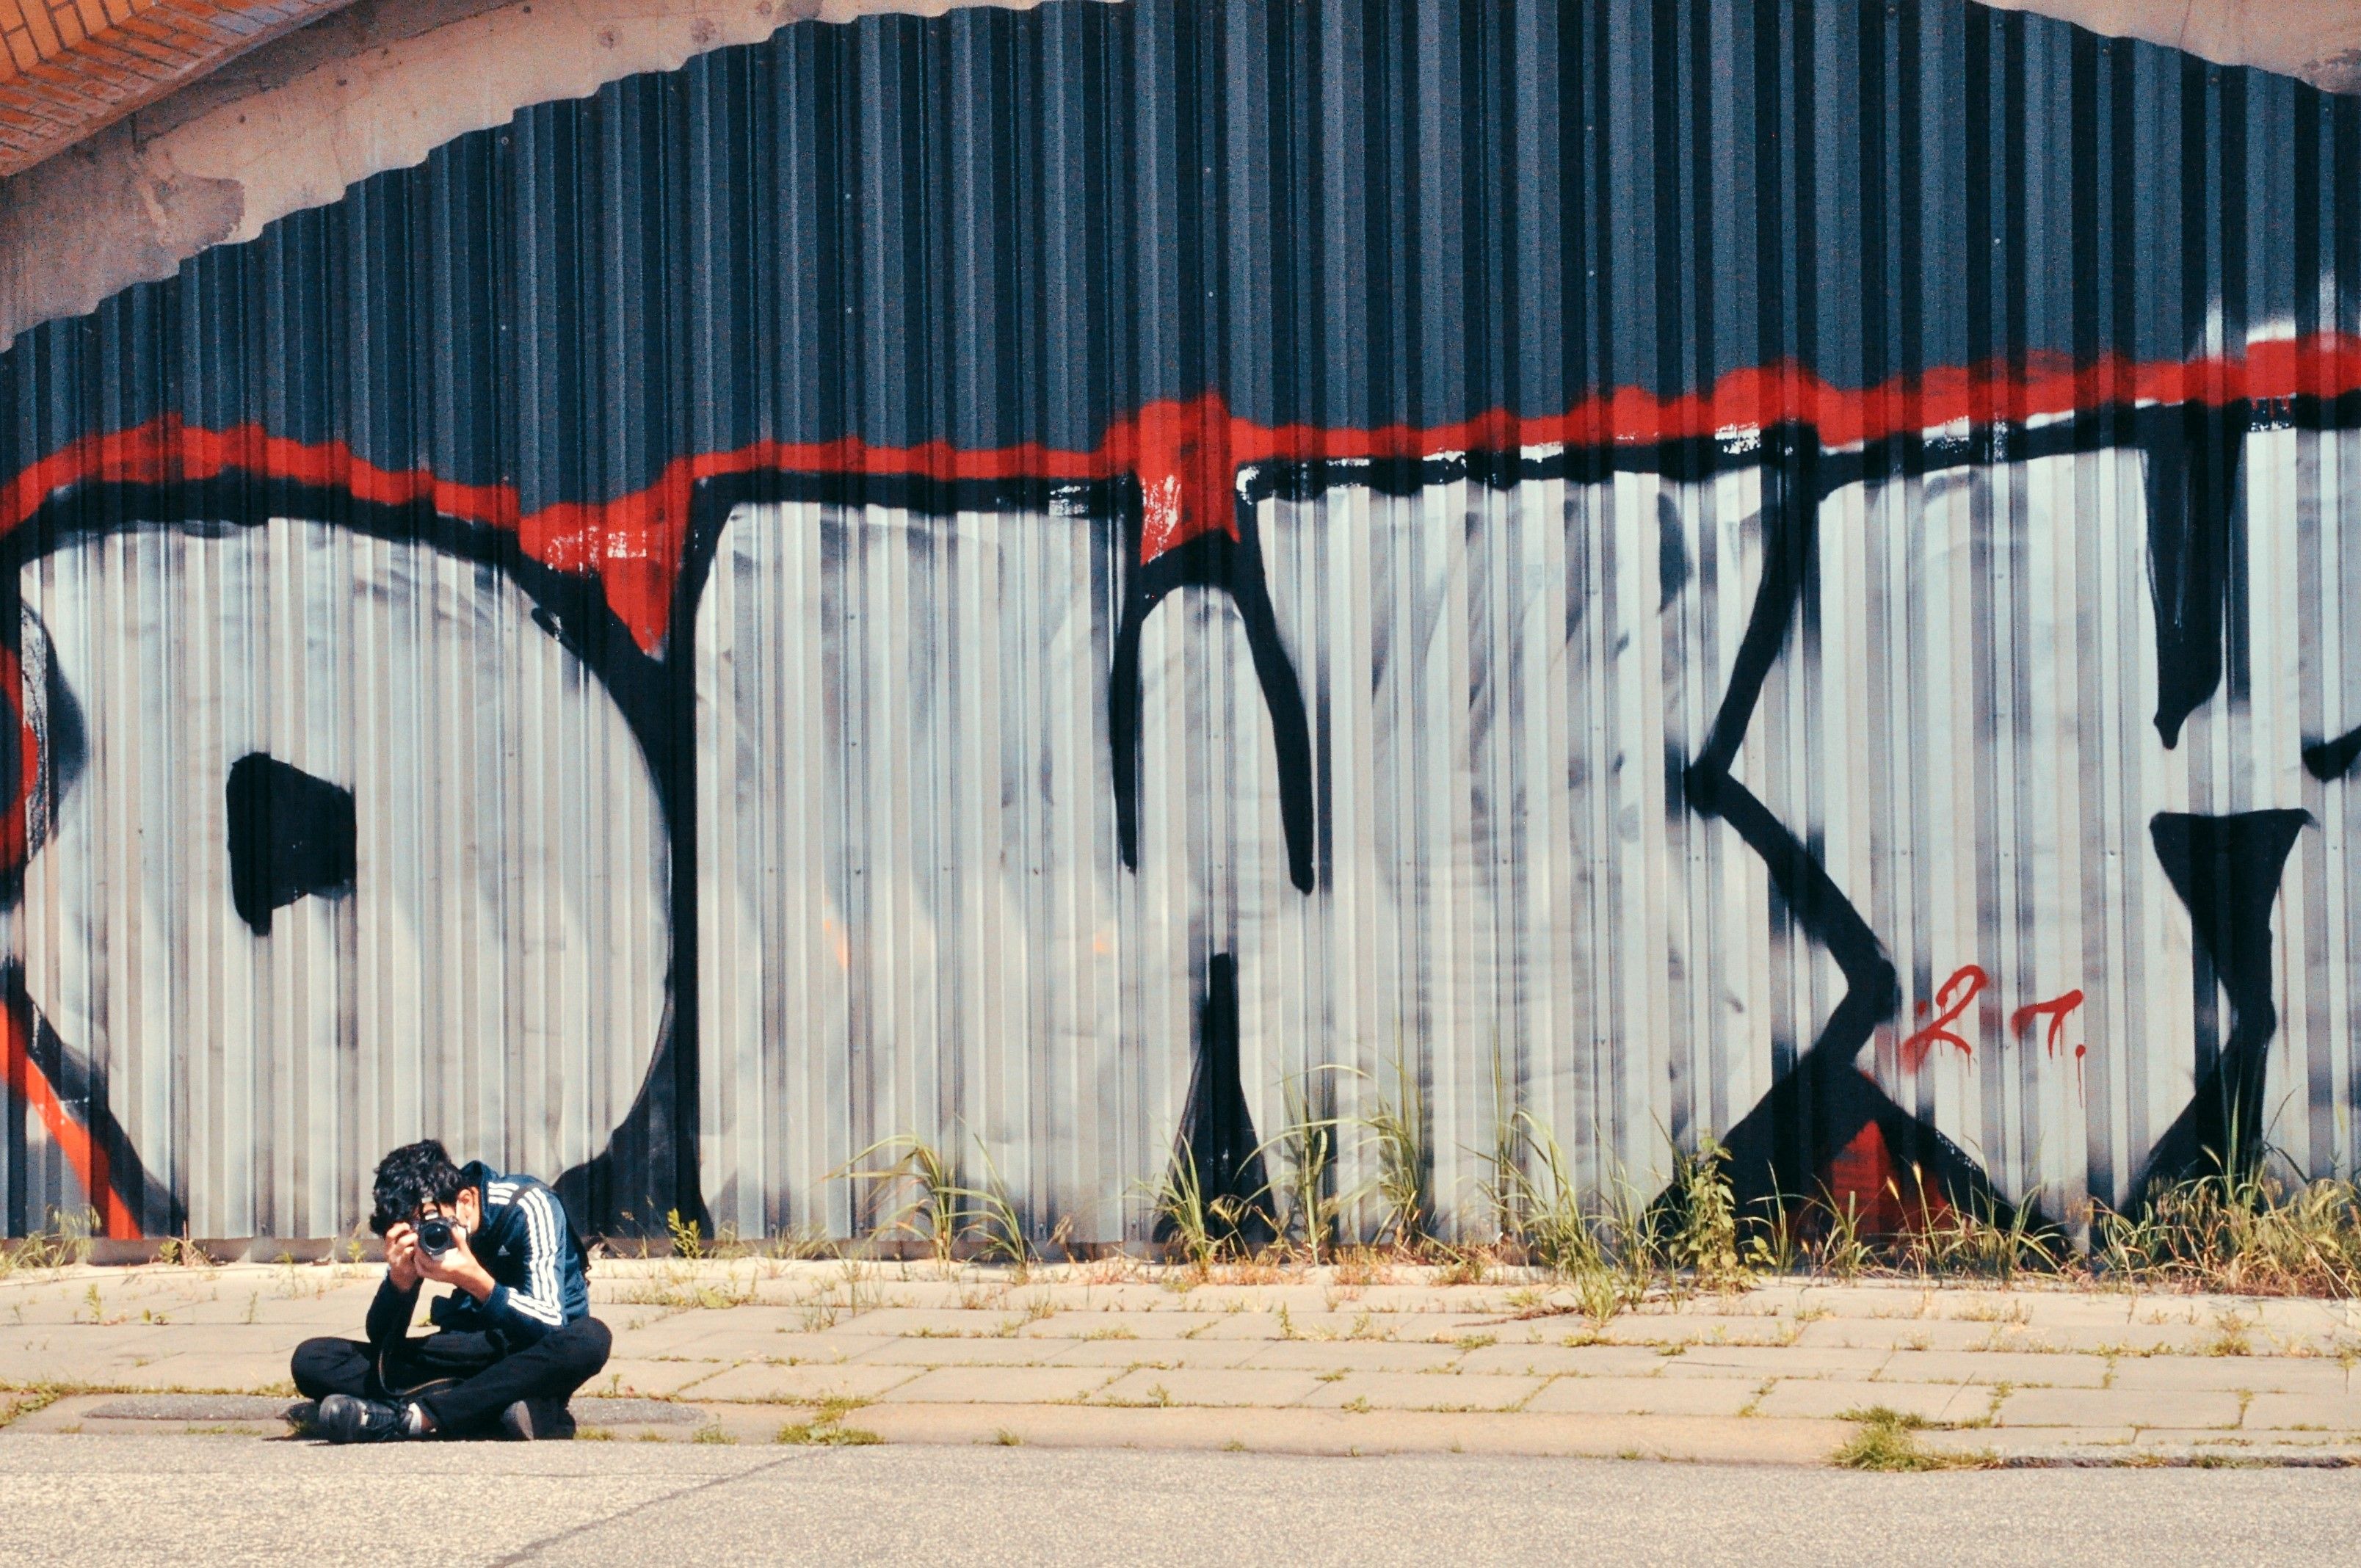 Das Foto zeigt eine fotografierende Person vor einer mit Graffiti bemalten Wand sitzend